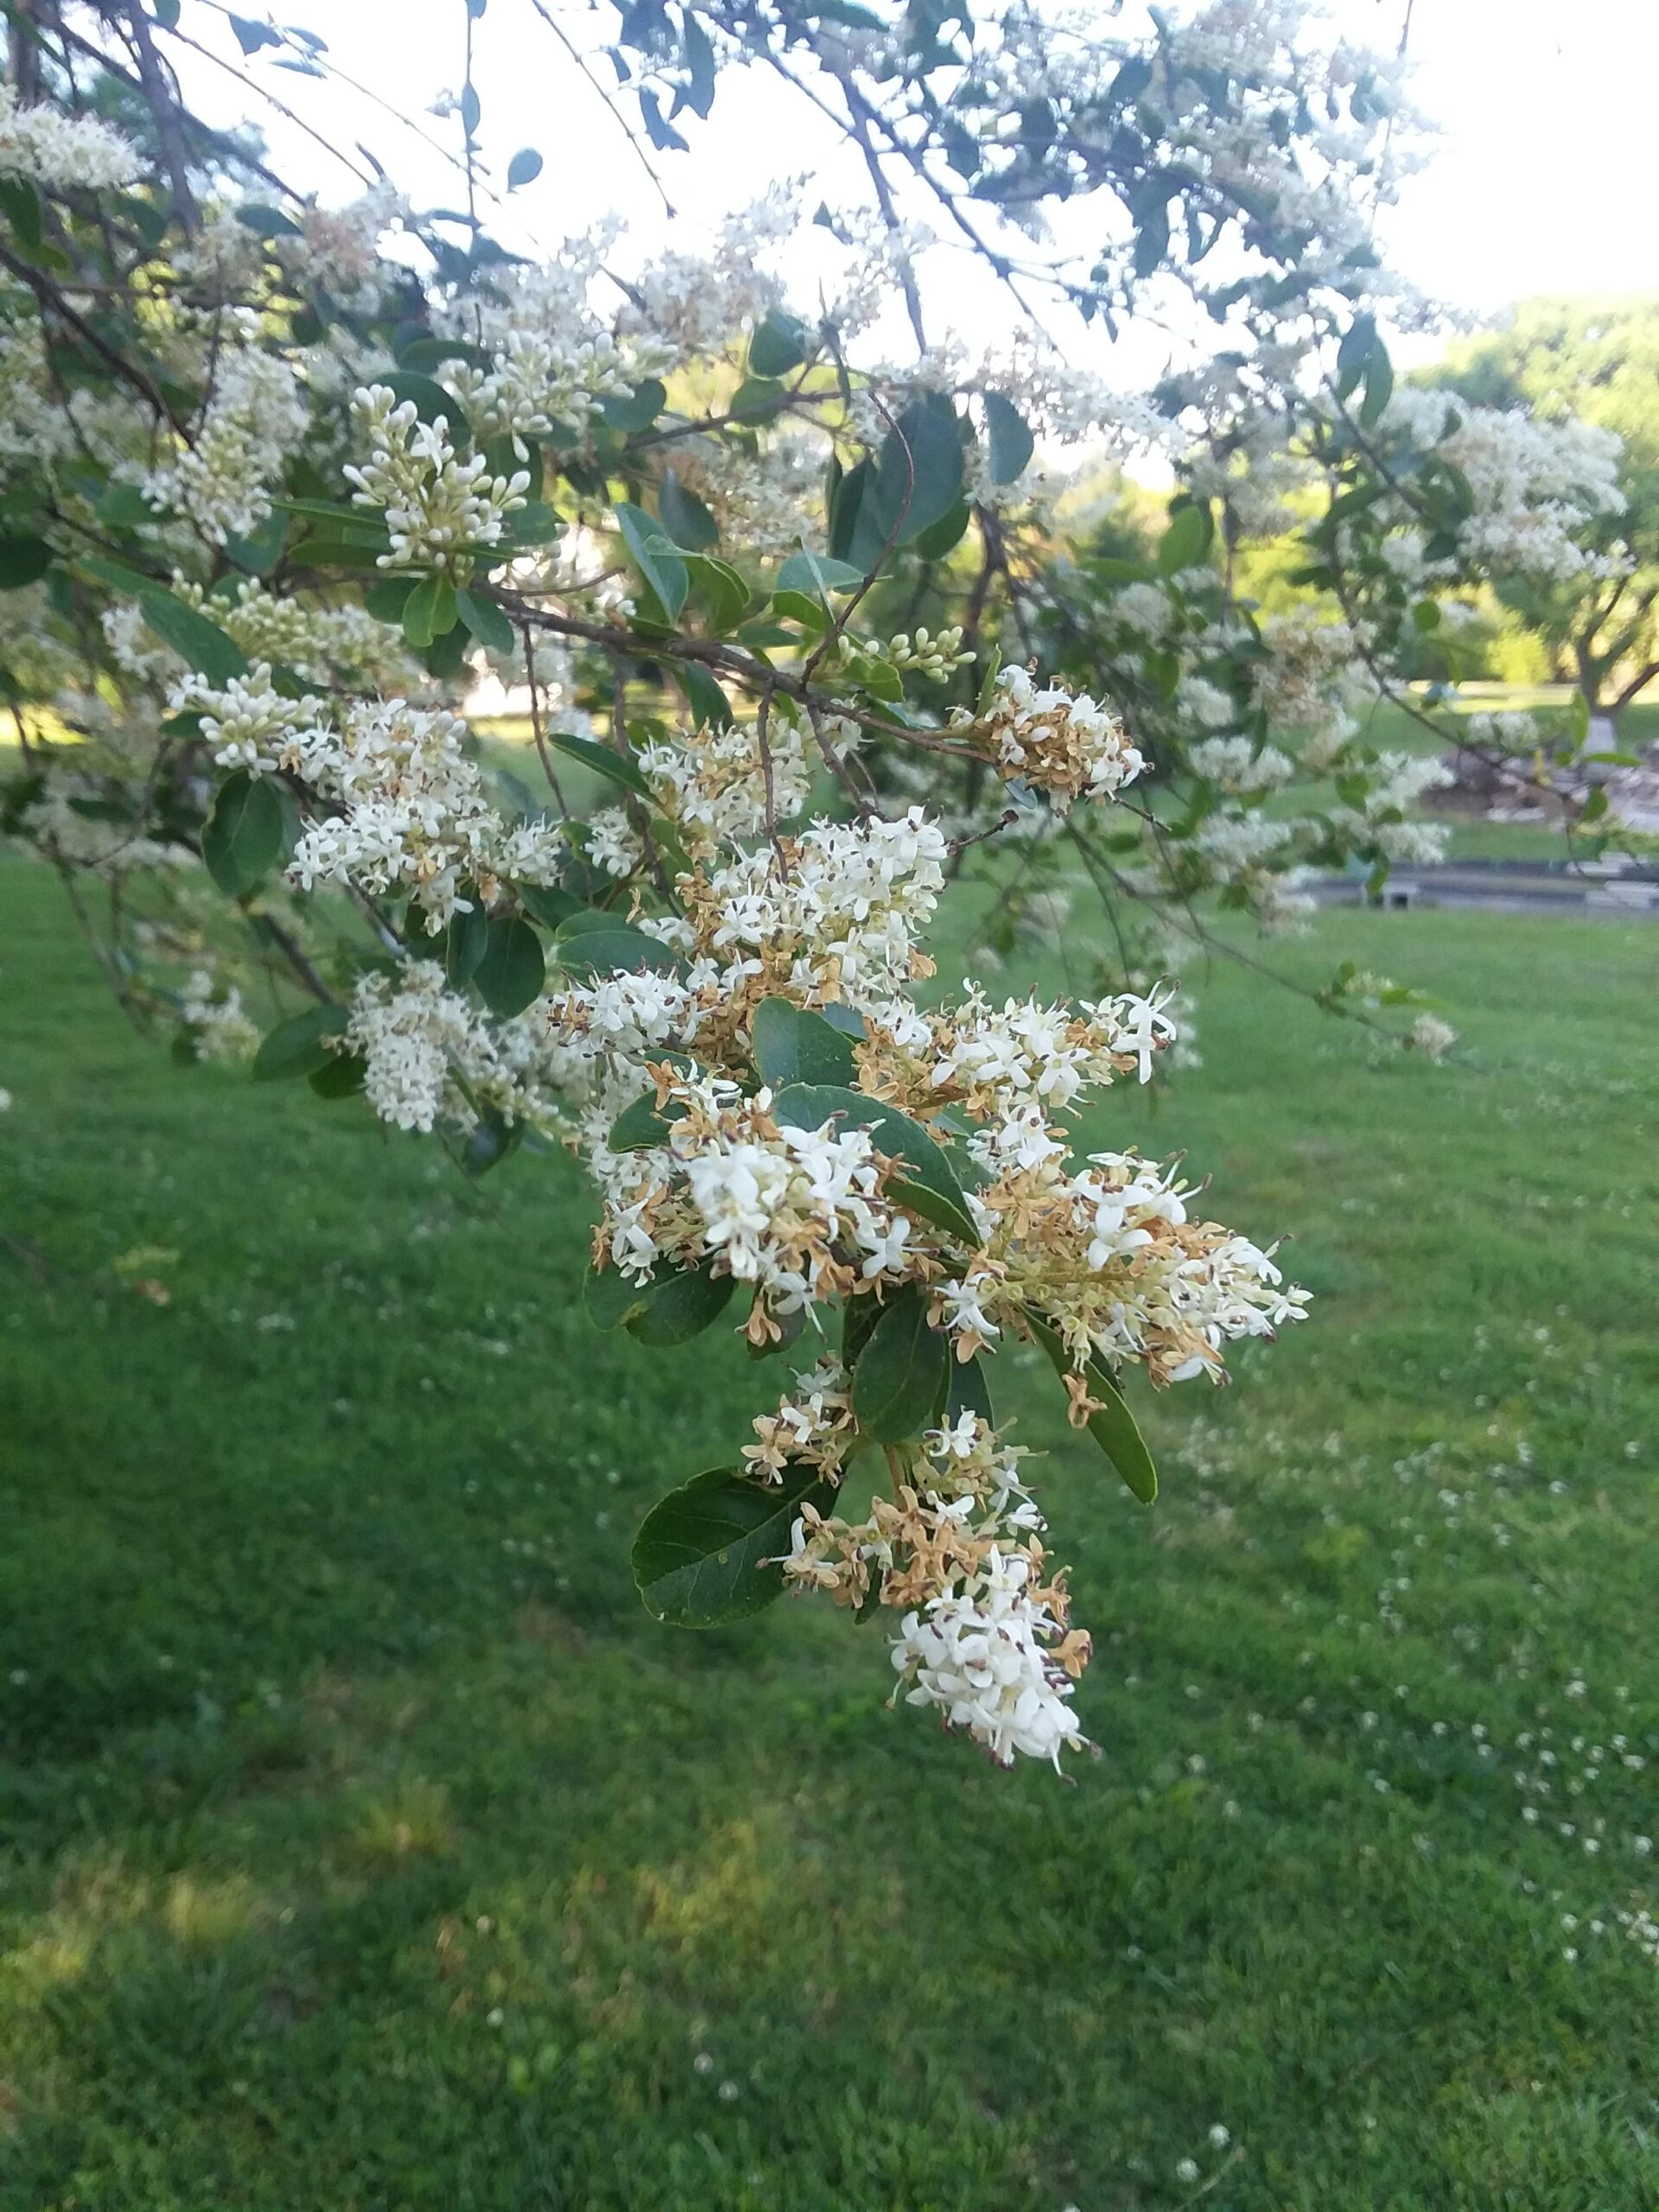 Flowering tree in Tennessee?